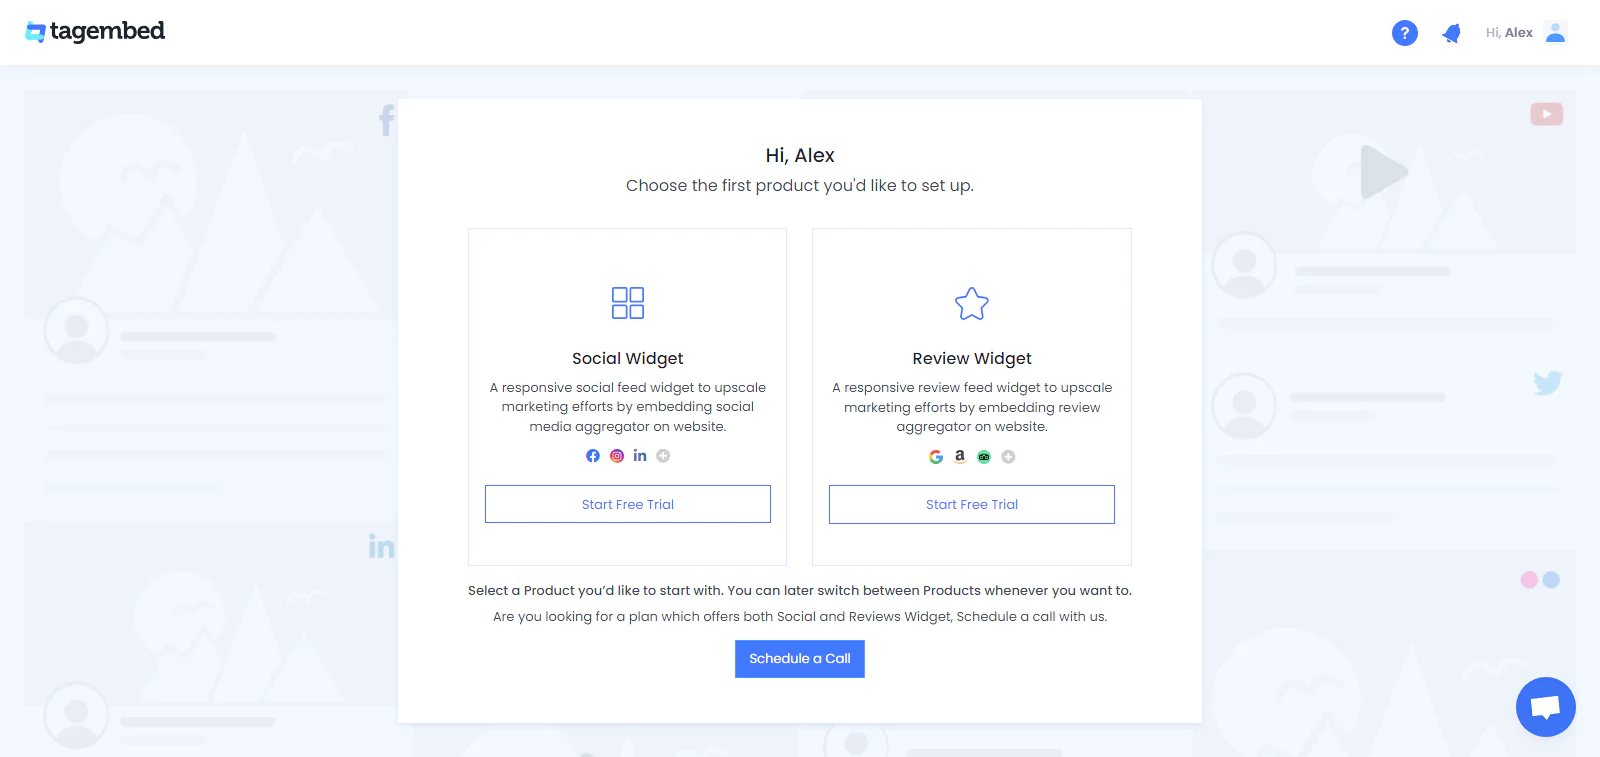 Social widget and review widget